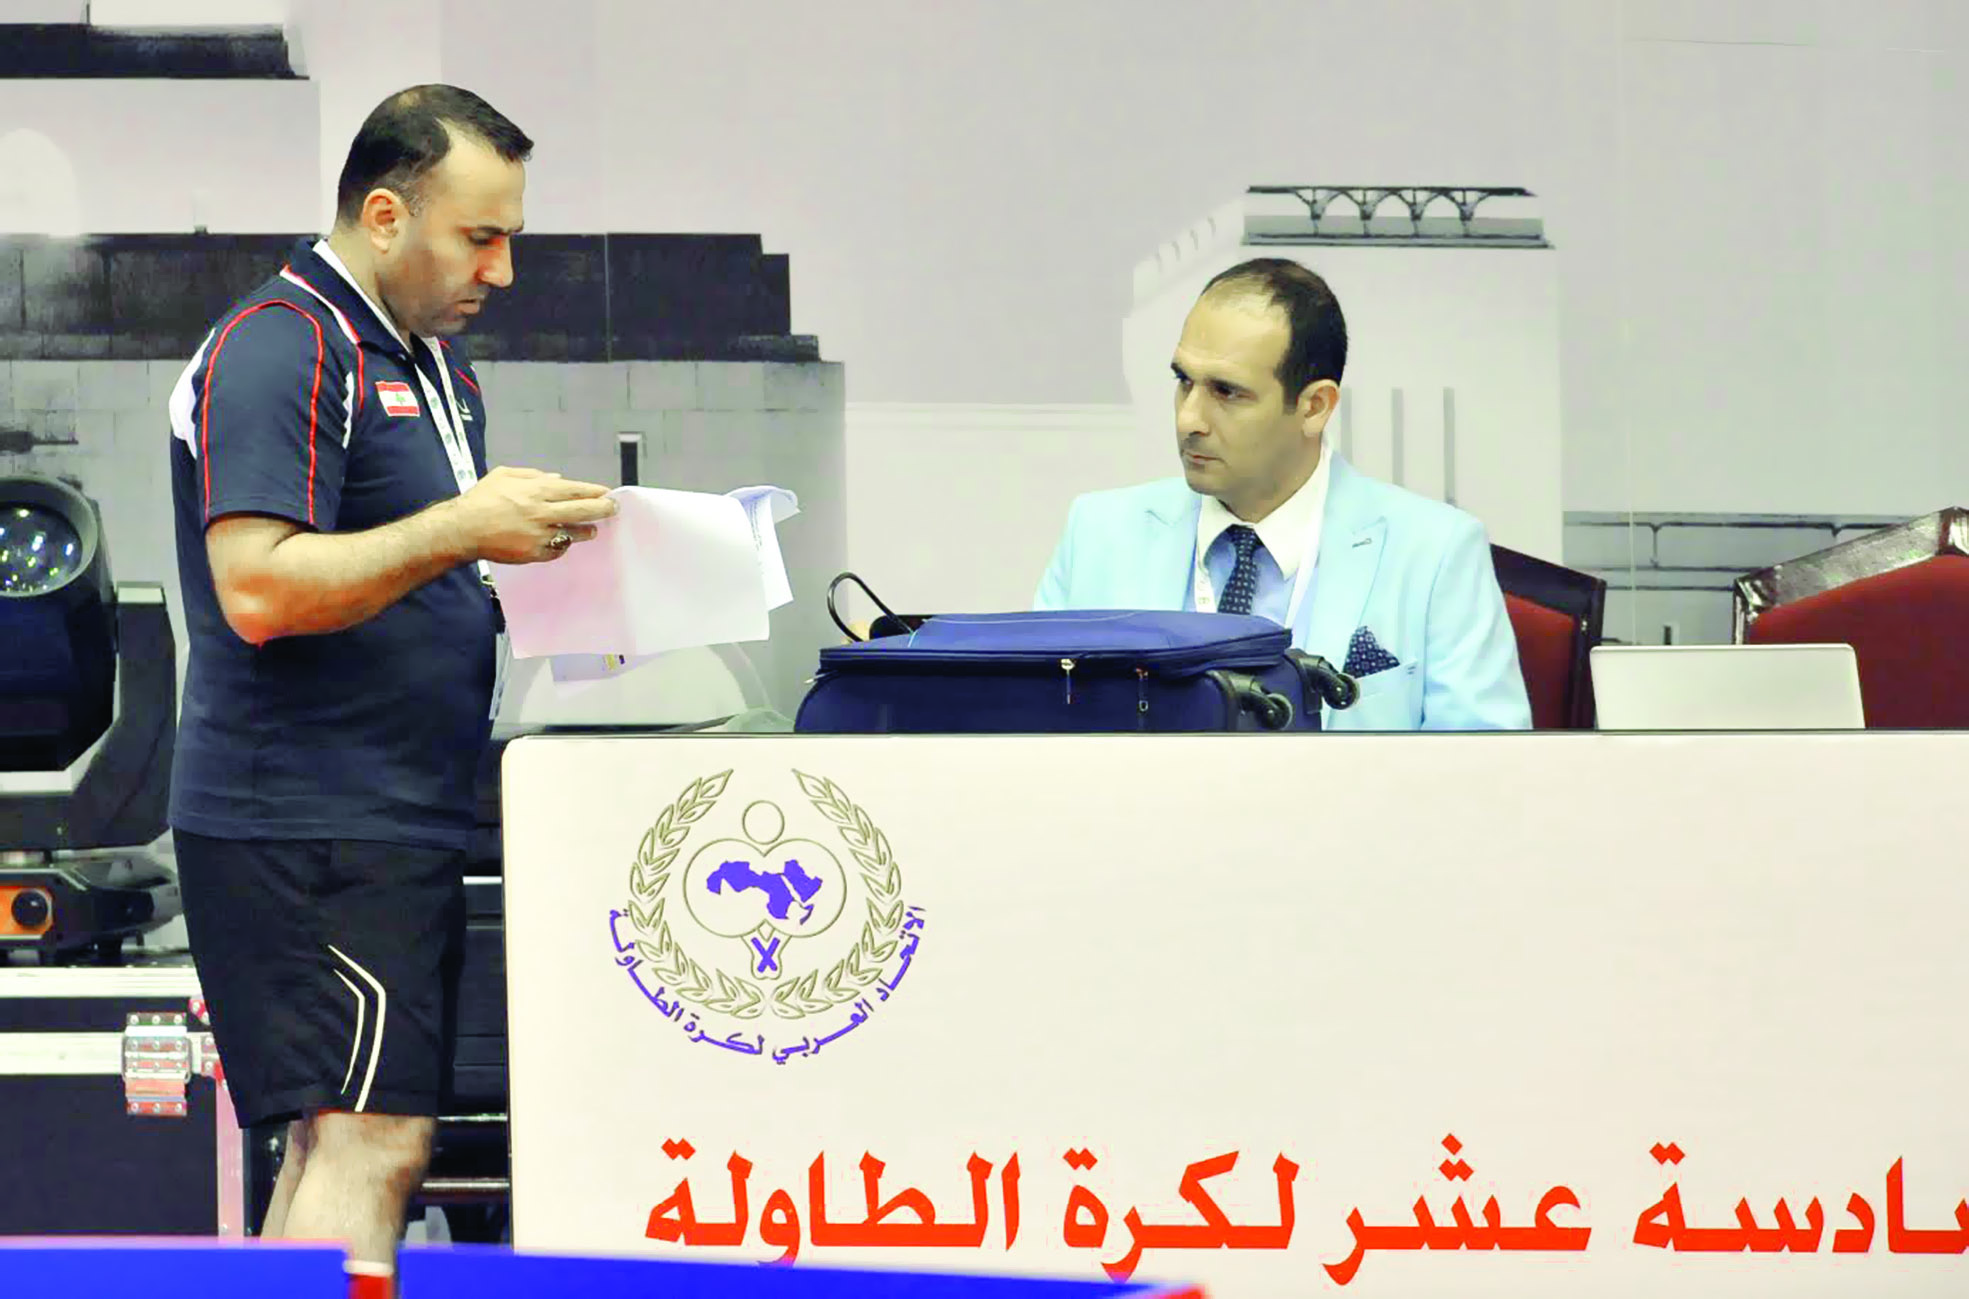 في اليوم الأول لفئة الأشبال..بداية قوية لبطولة كأس العرب لكرة الطاولة